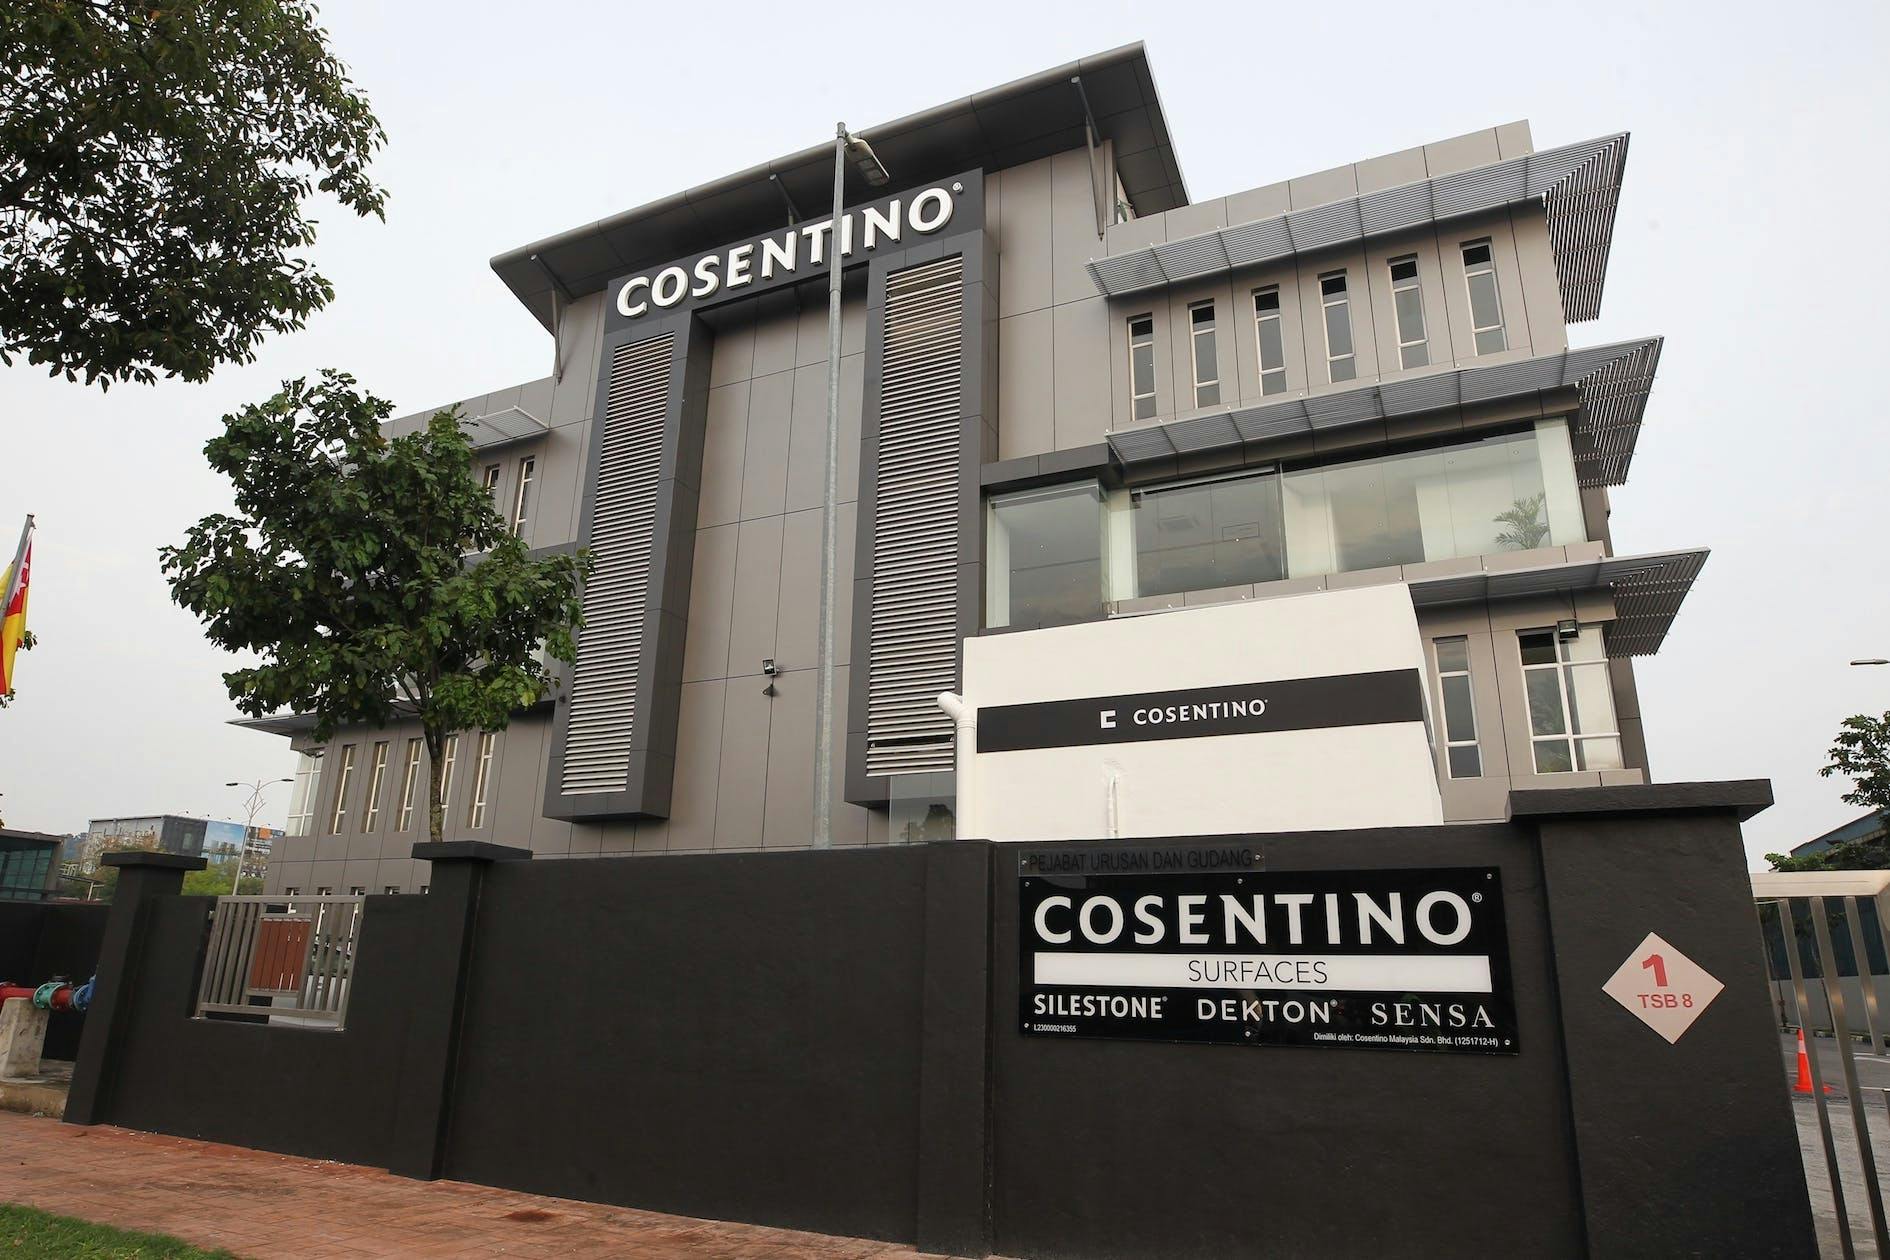 Numéro d'image 32 de la section actuelle de Le groupe Cosentino renforce sa présence en Asie avec l’ouverture d’un nouveau « Center » en Malaisie de Cosentino France